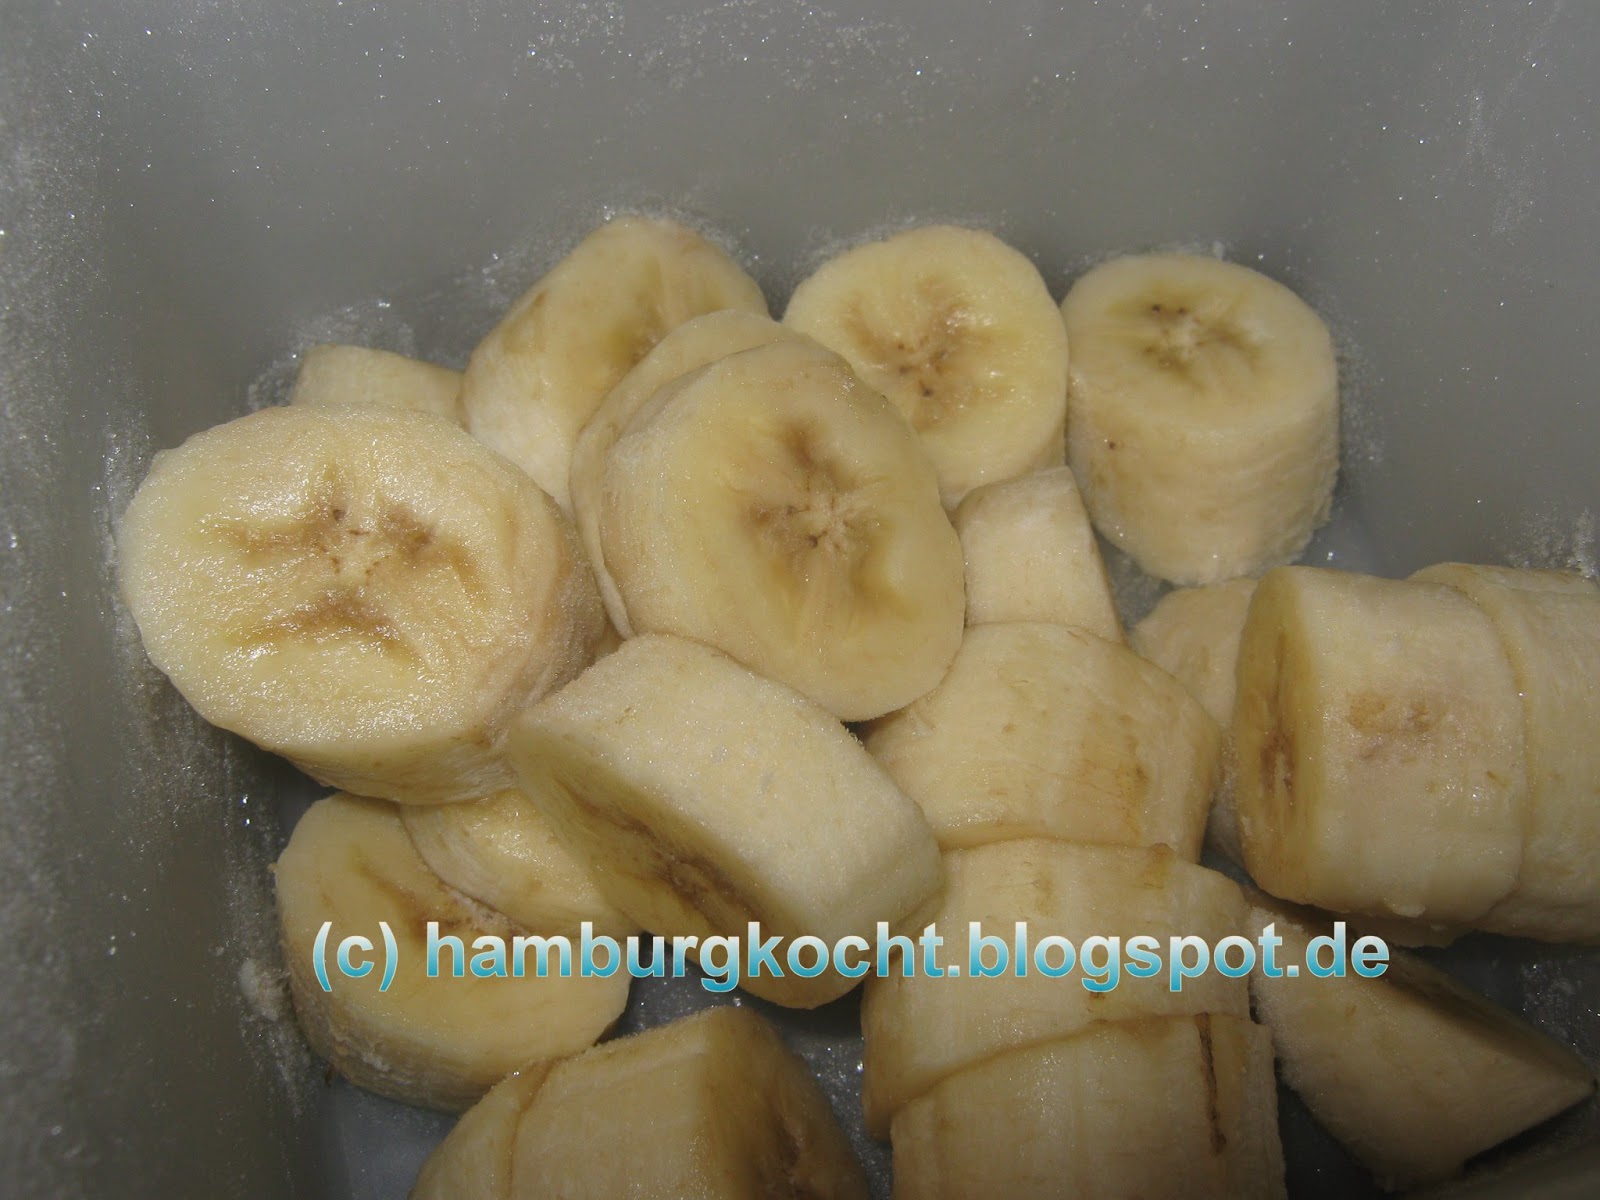 Hamburg kocht!: Bananen-Kokos-Eis ohne Eismaschine nach Jamie Oliver